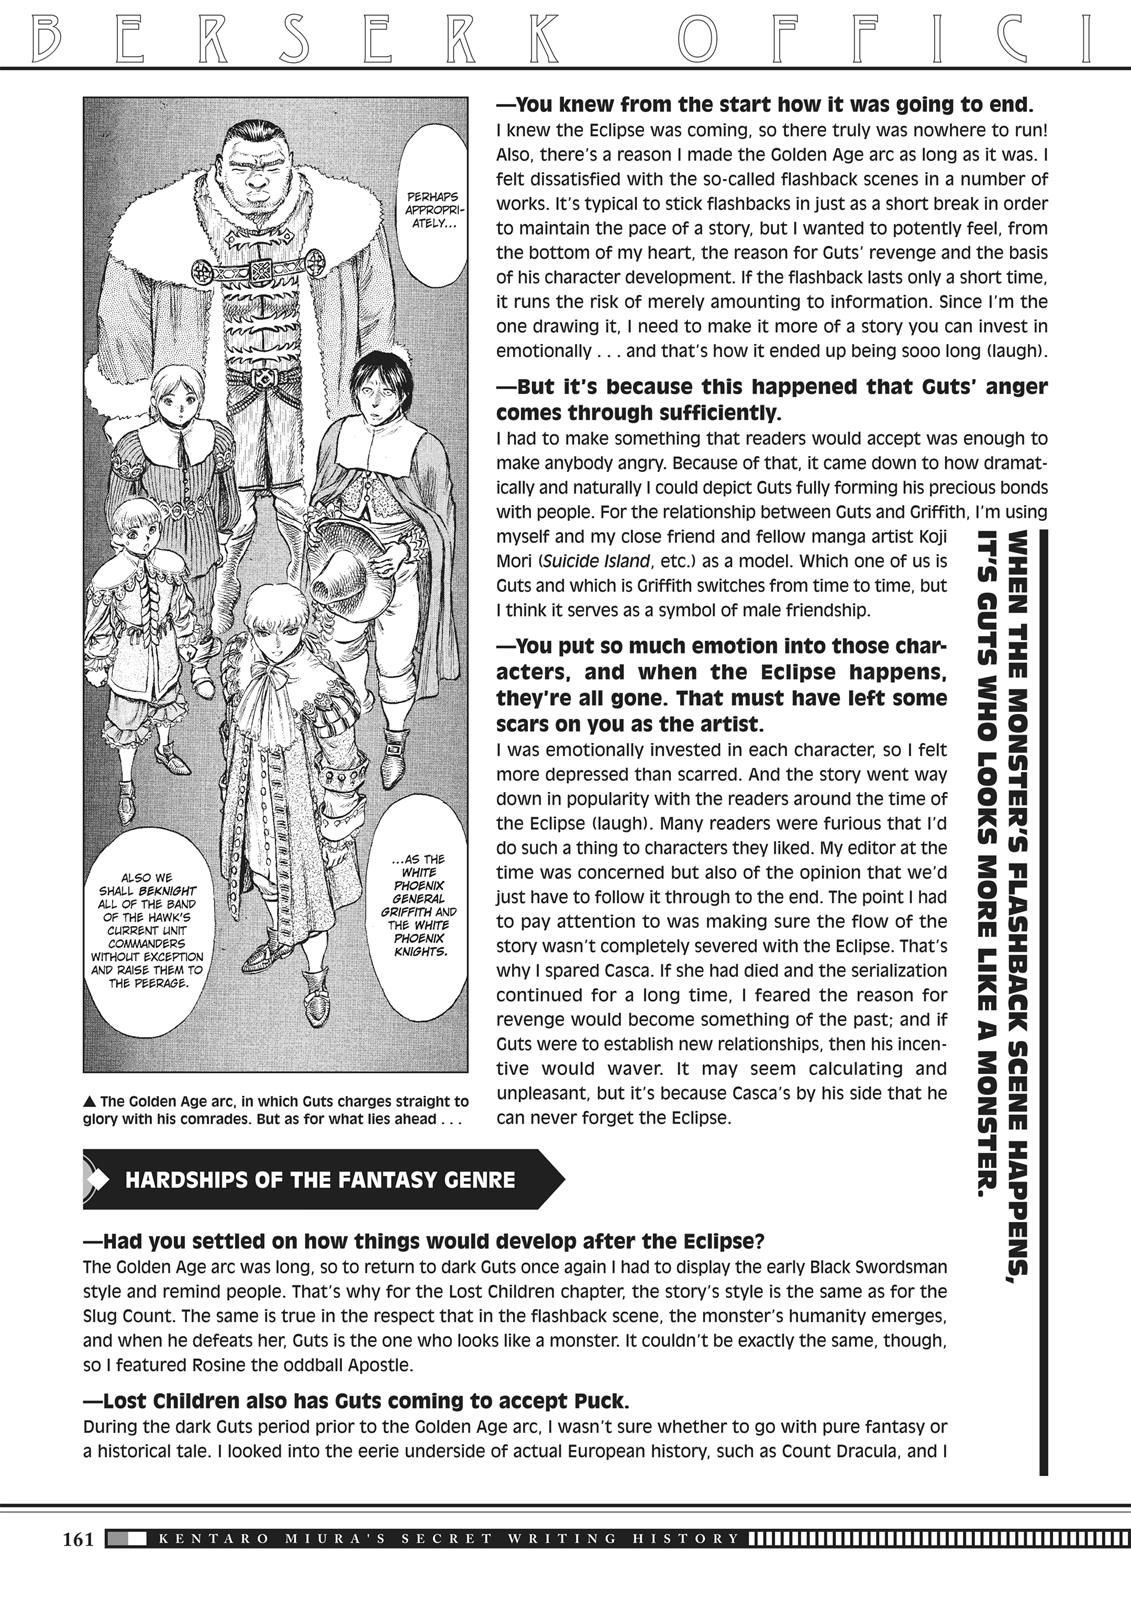 Berserk Manga Chapter 350.5 image 158